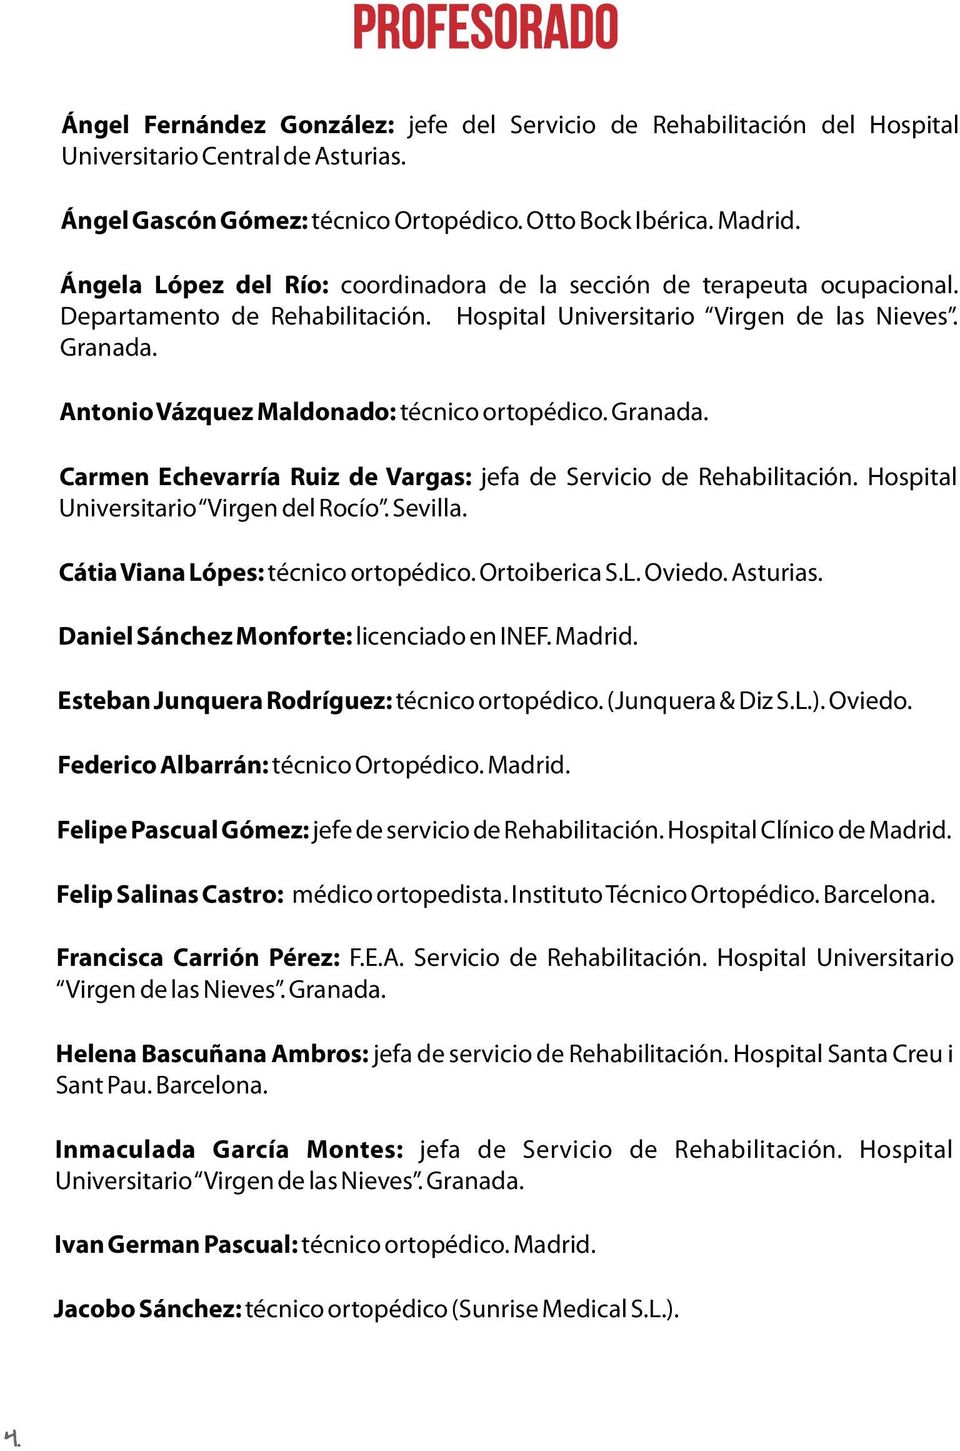 Antonio Vázquez Maldonado: técnico ortopédico. Granada. Carmen Echevarría Ruiz de Vargas: jefa de Servicio de Rehabilitación. Hospital Universitario Virgen del Rocío. Sevilla.